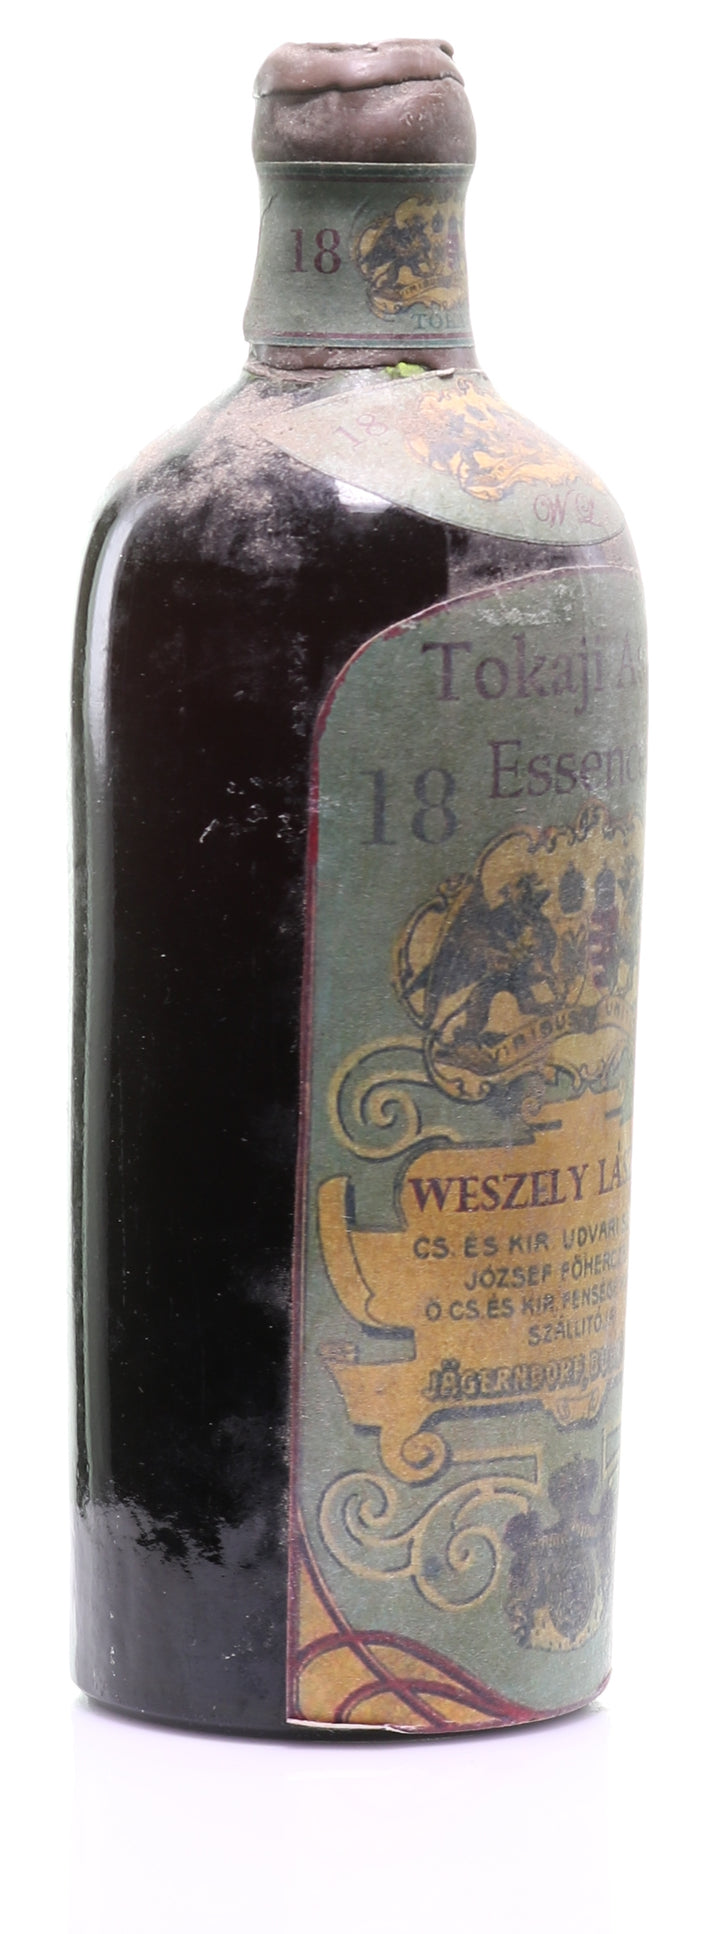 Tokaji Aszú Essencia 1899 Weszely László - legendaryvintages